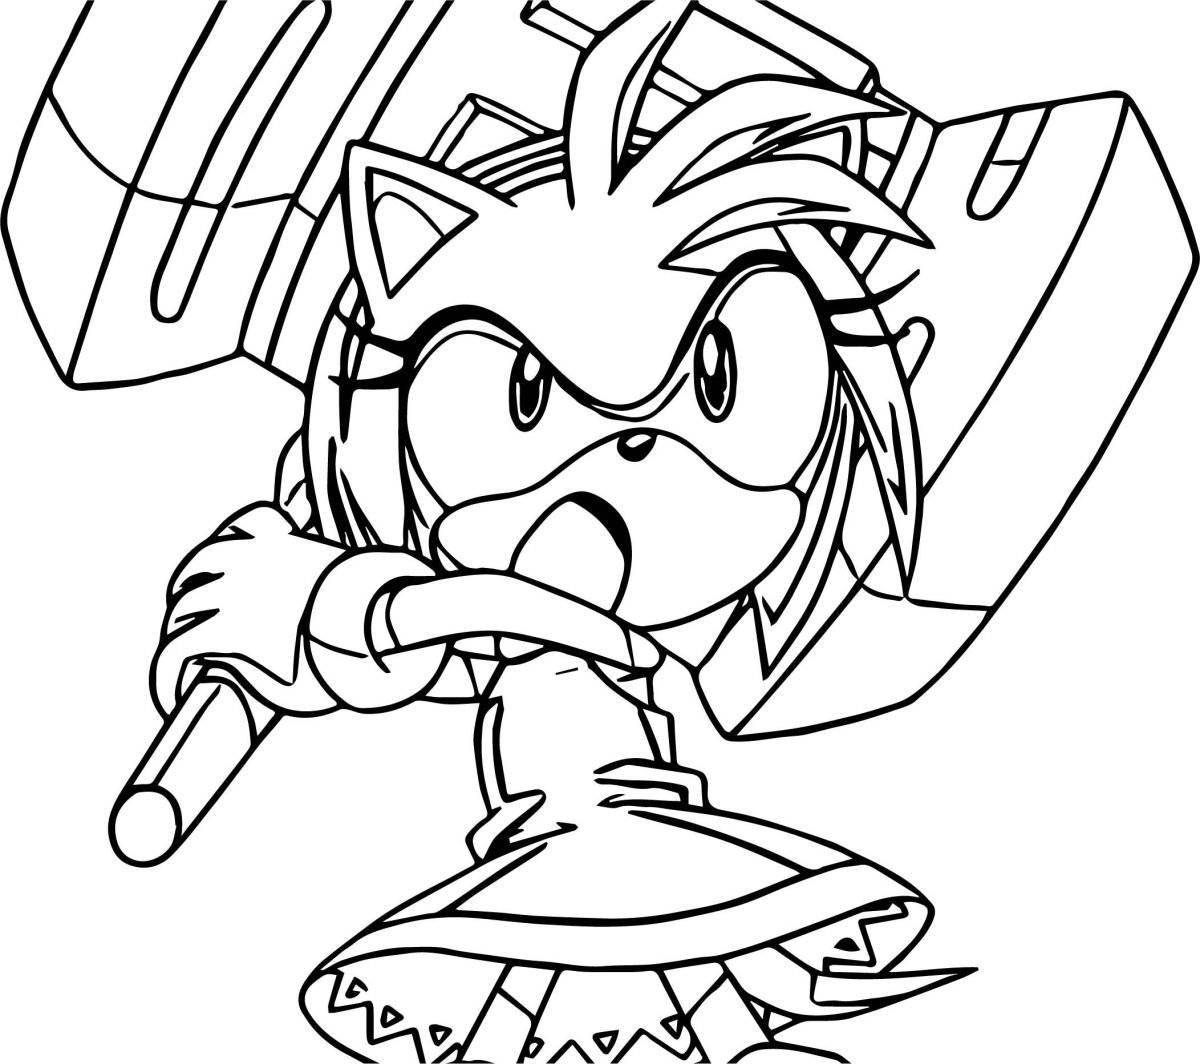 Sonic daring emmy